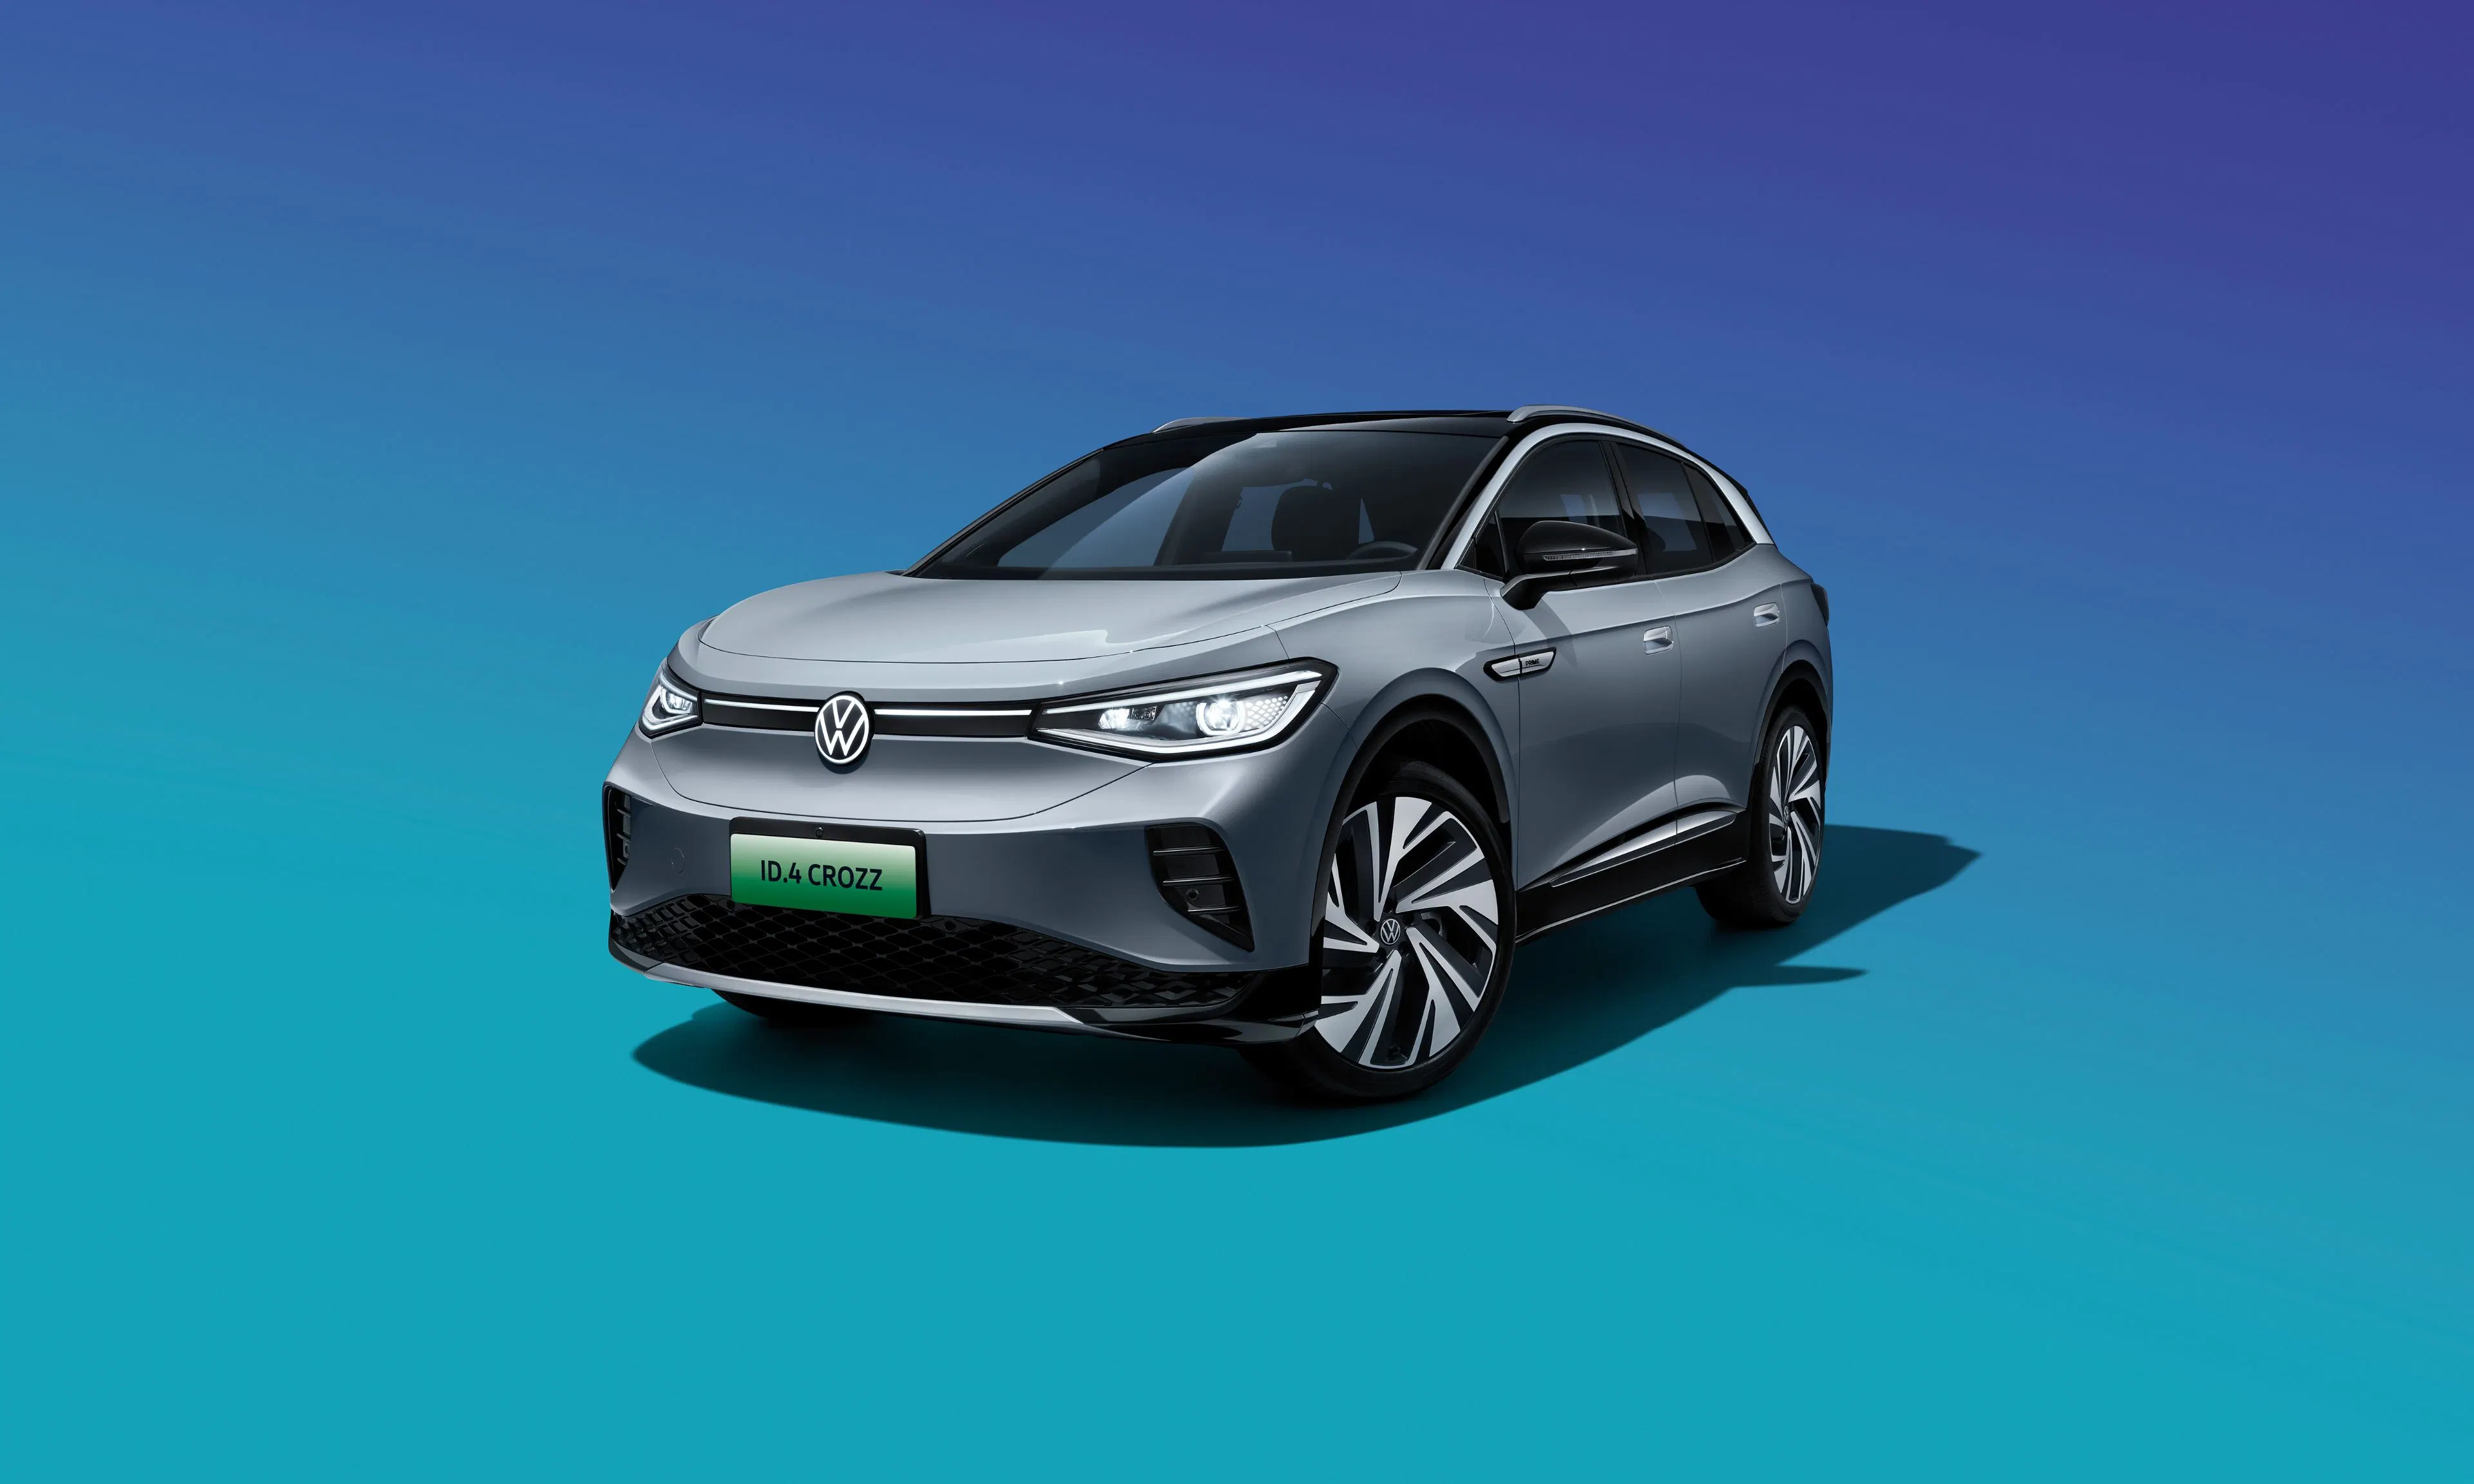 Volkswagen ID4 Crozz 2022 Long Range Lite PRO Versión Nuevo Vehículo eléctrico de SUV usado con 5 asientos populares en China Coche eléctrico usado coche de coche Nuevo coche de la energía